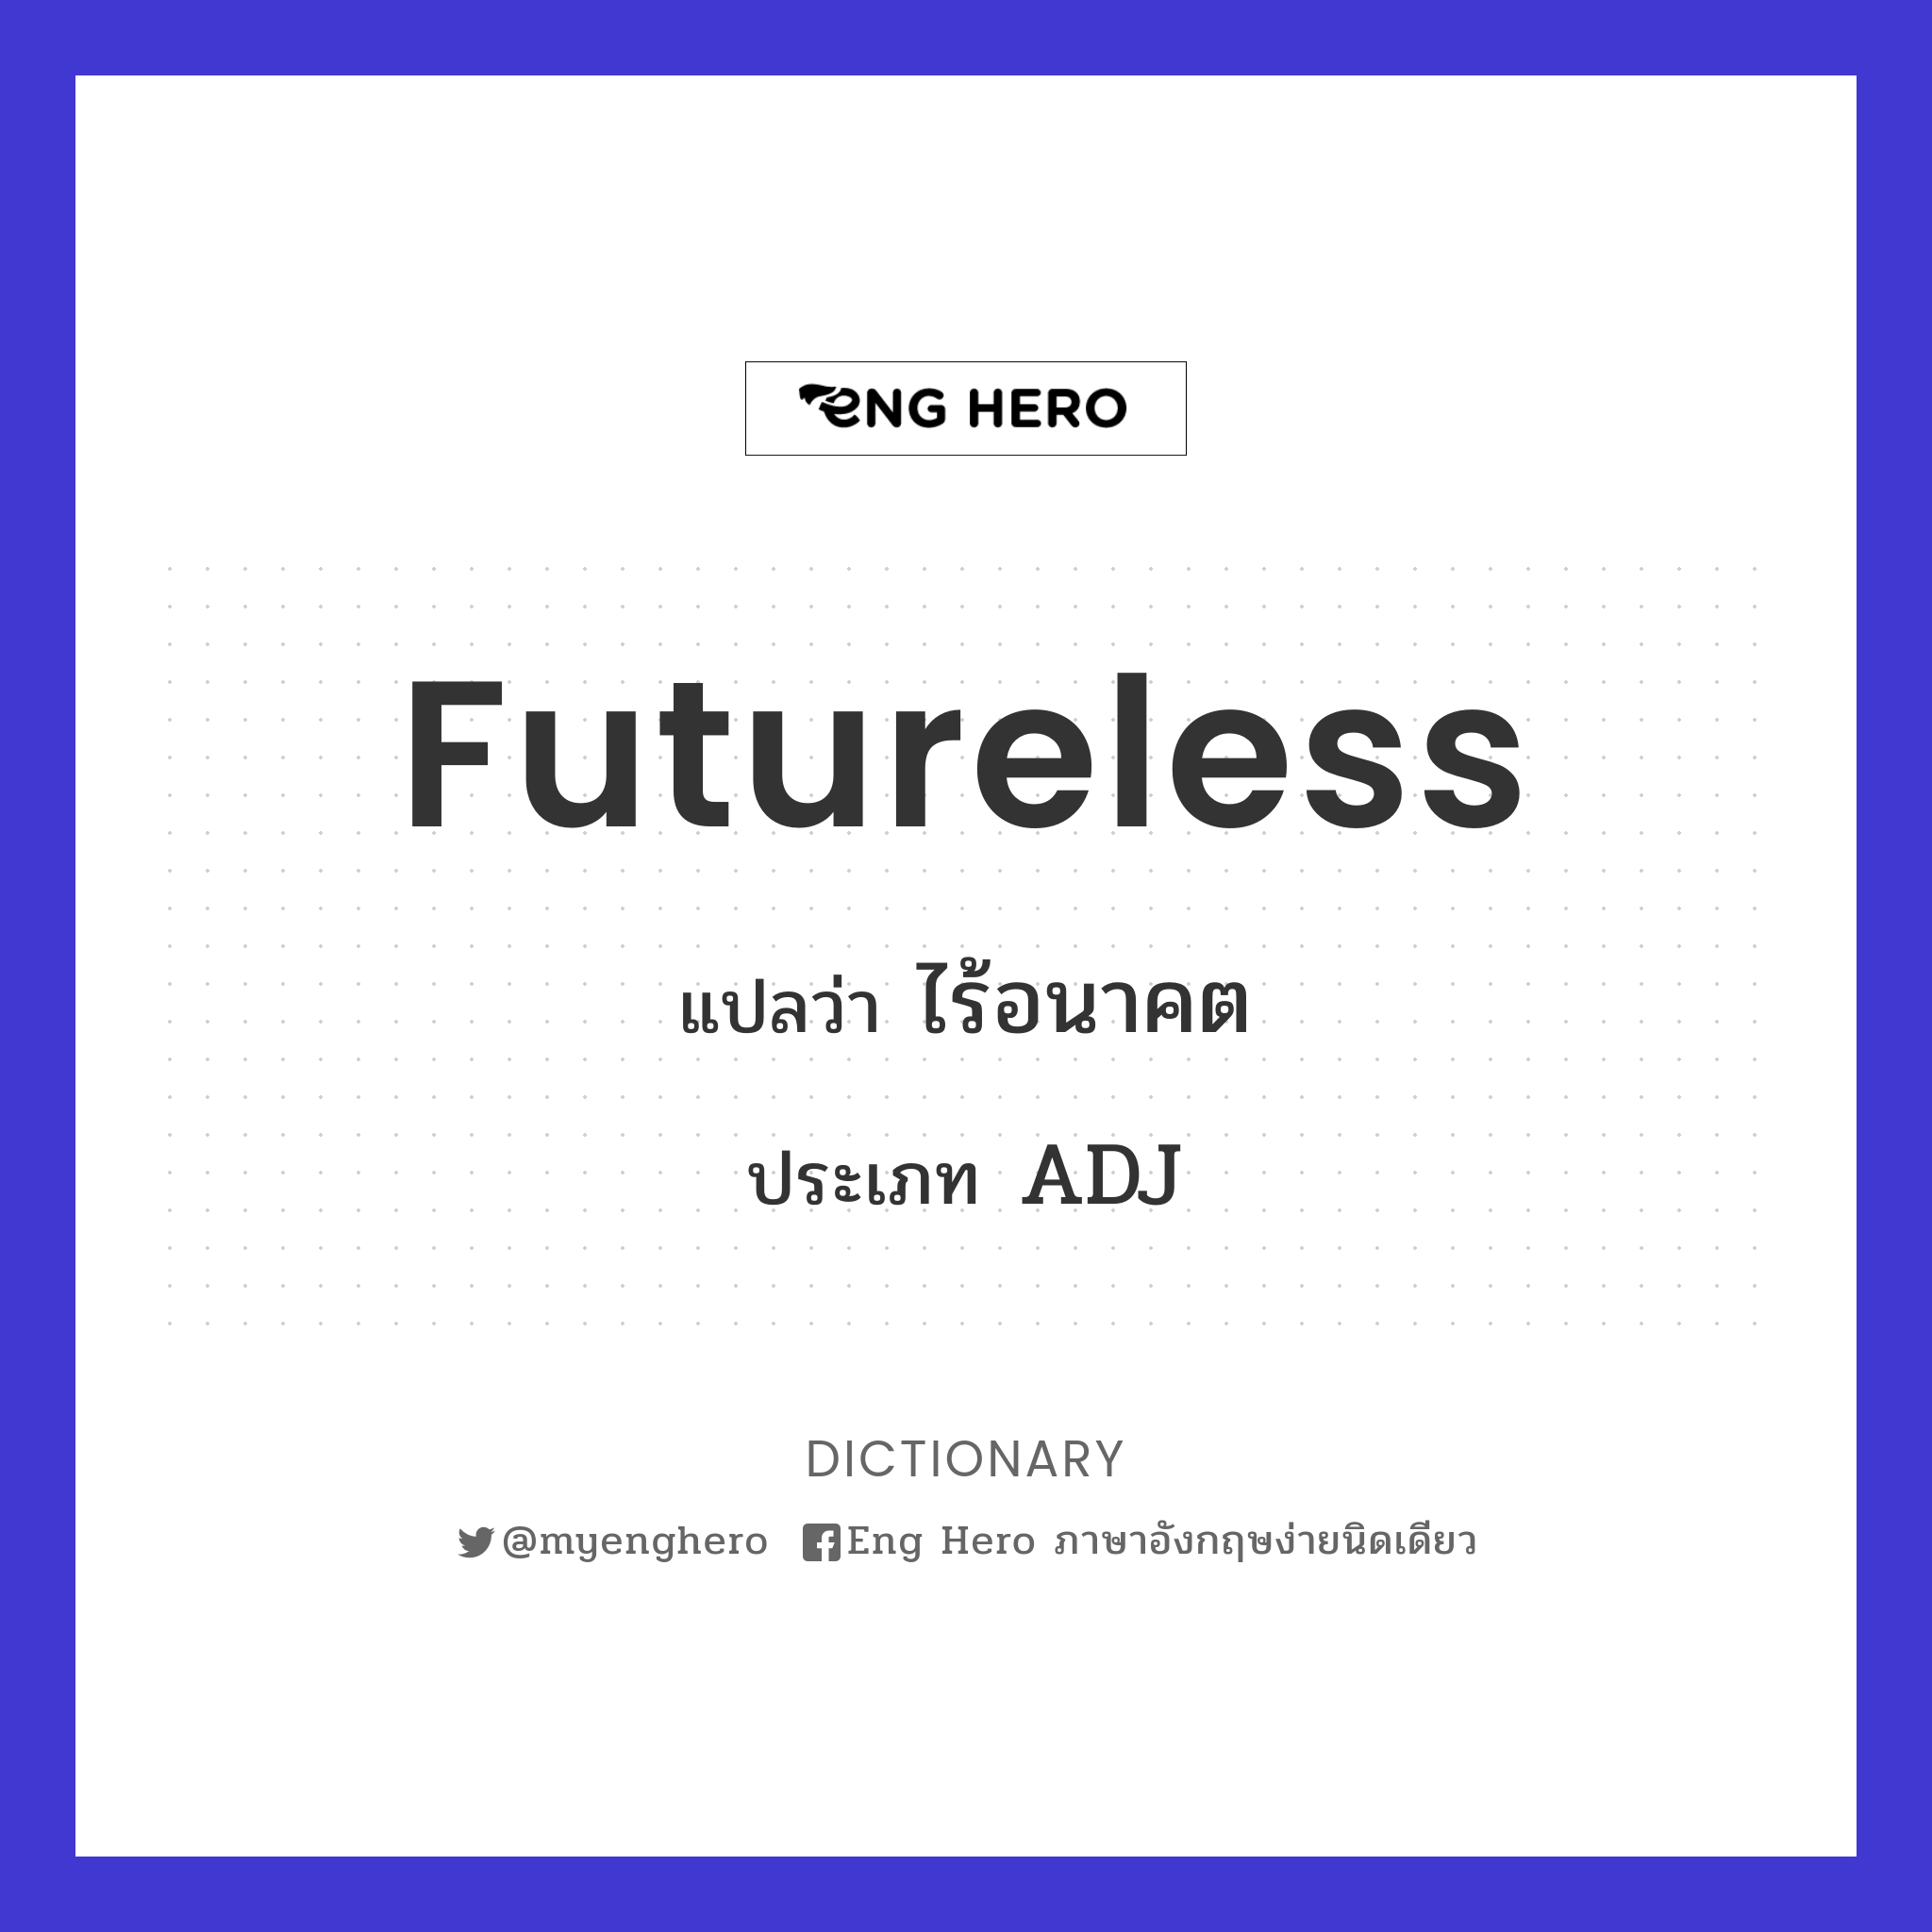 futureless